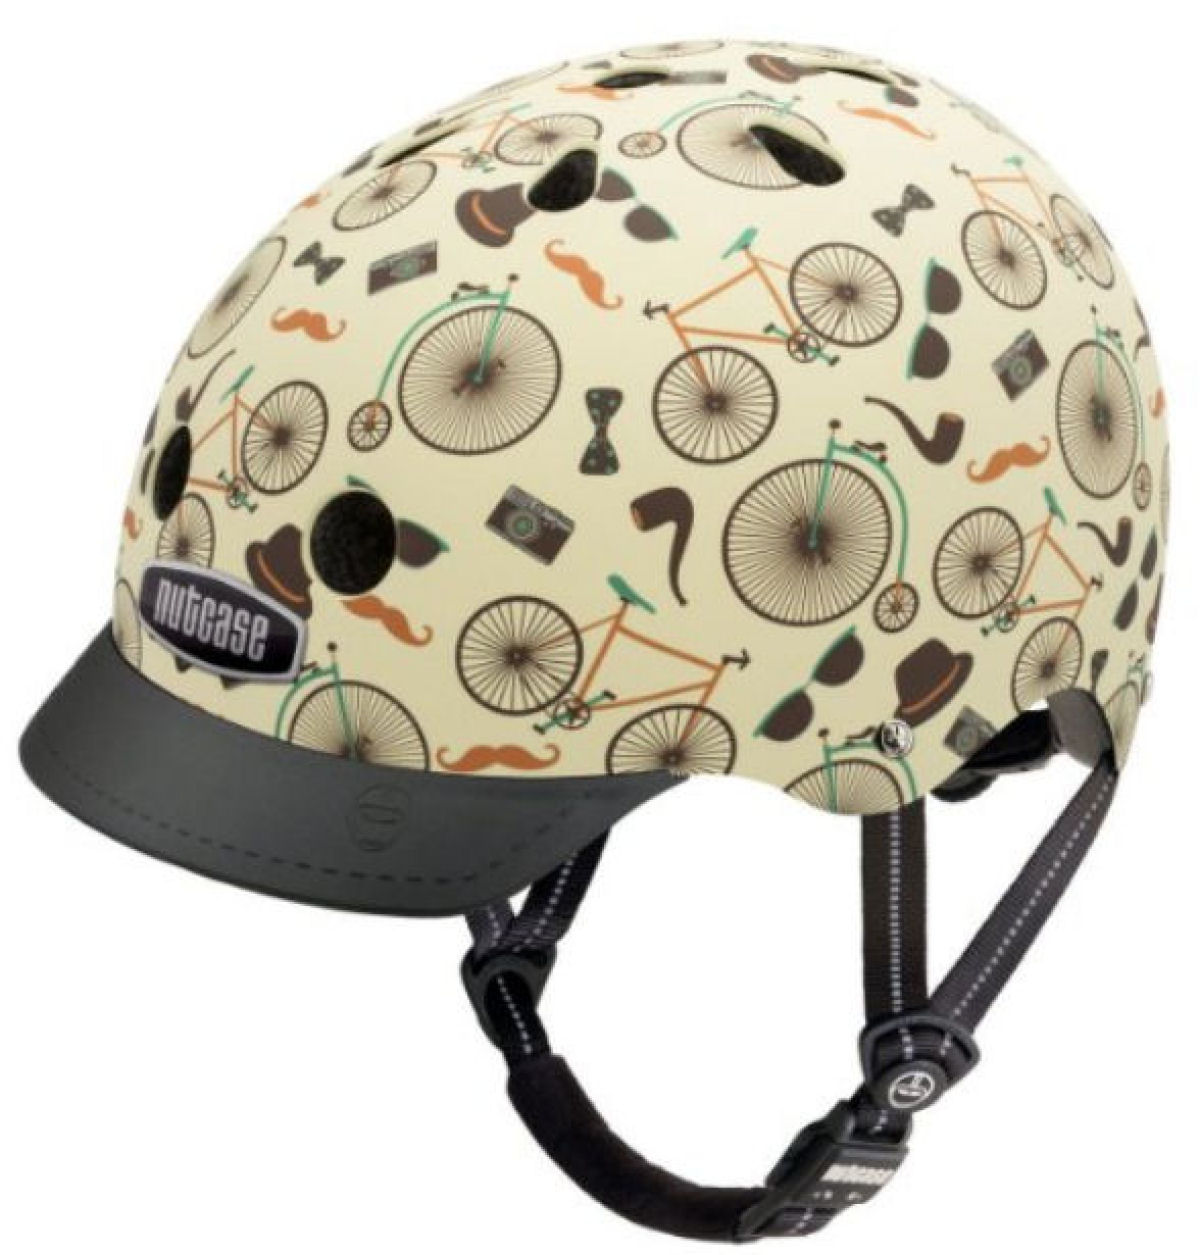 Nutcase - Patterned Street Bike Helmet